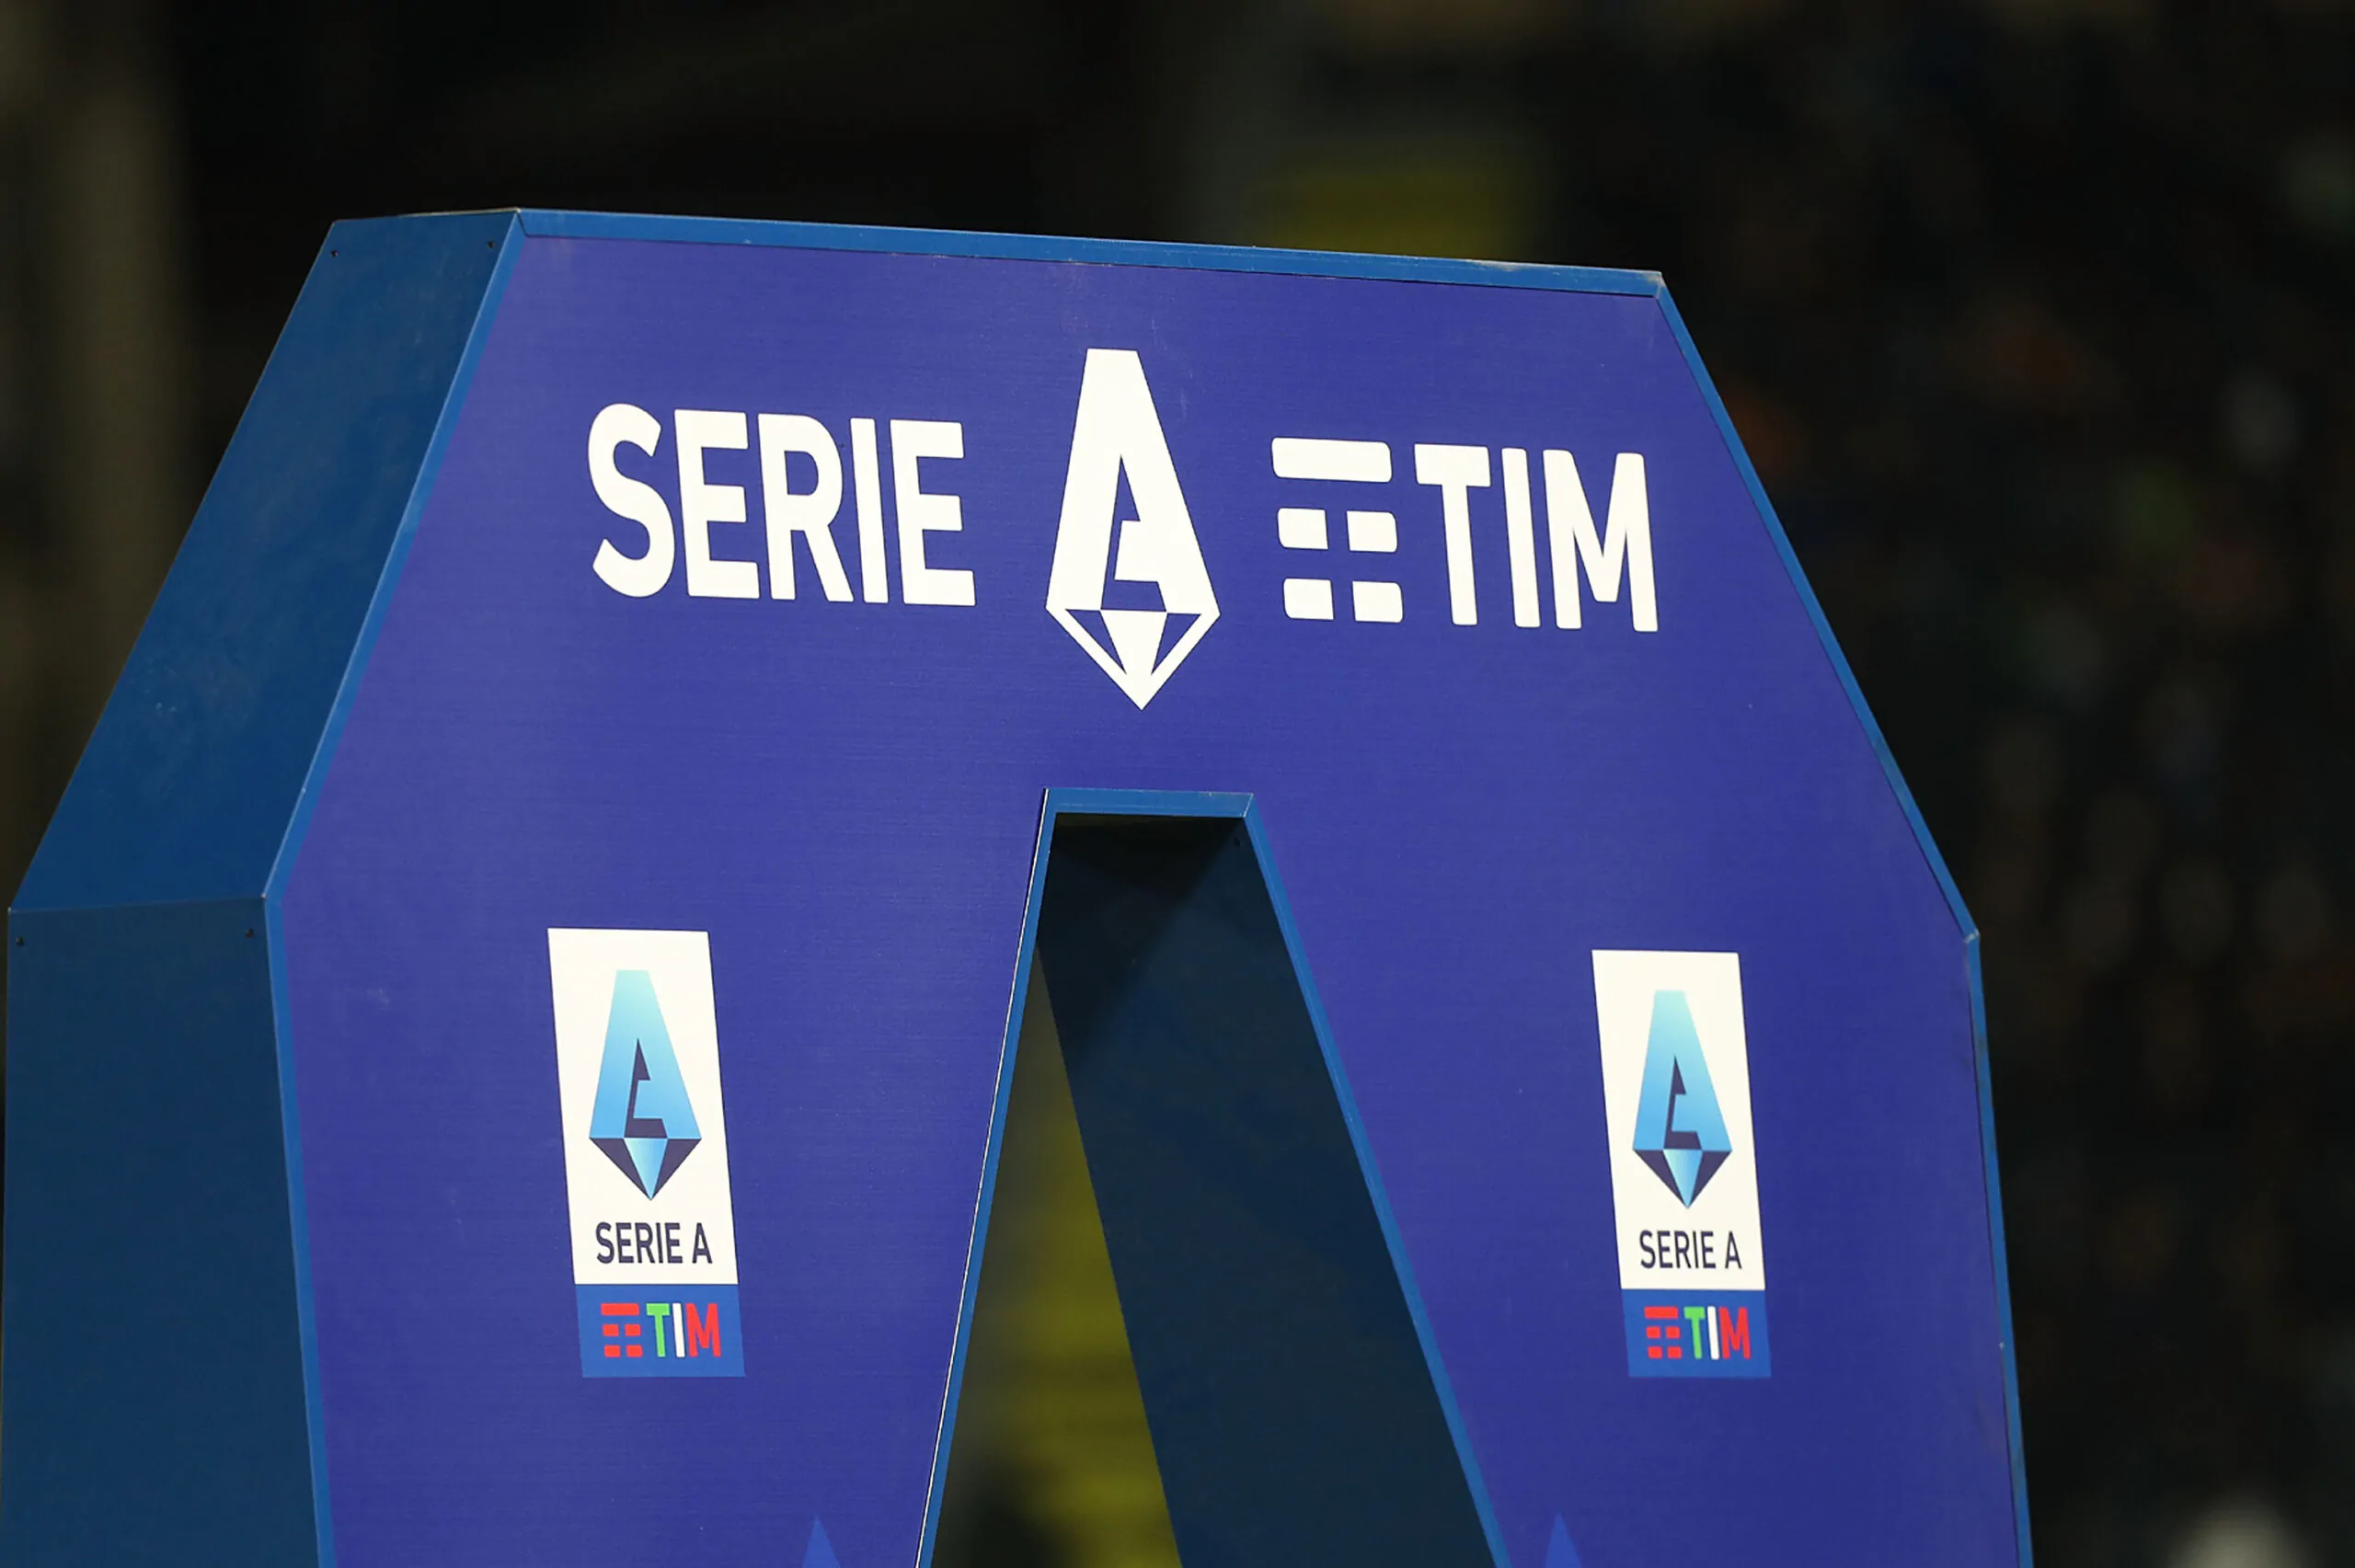 Novità in arrivo per la Serie A: accadrà nel girone di ritorno